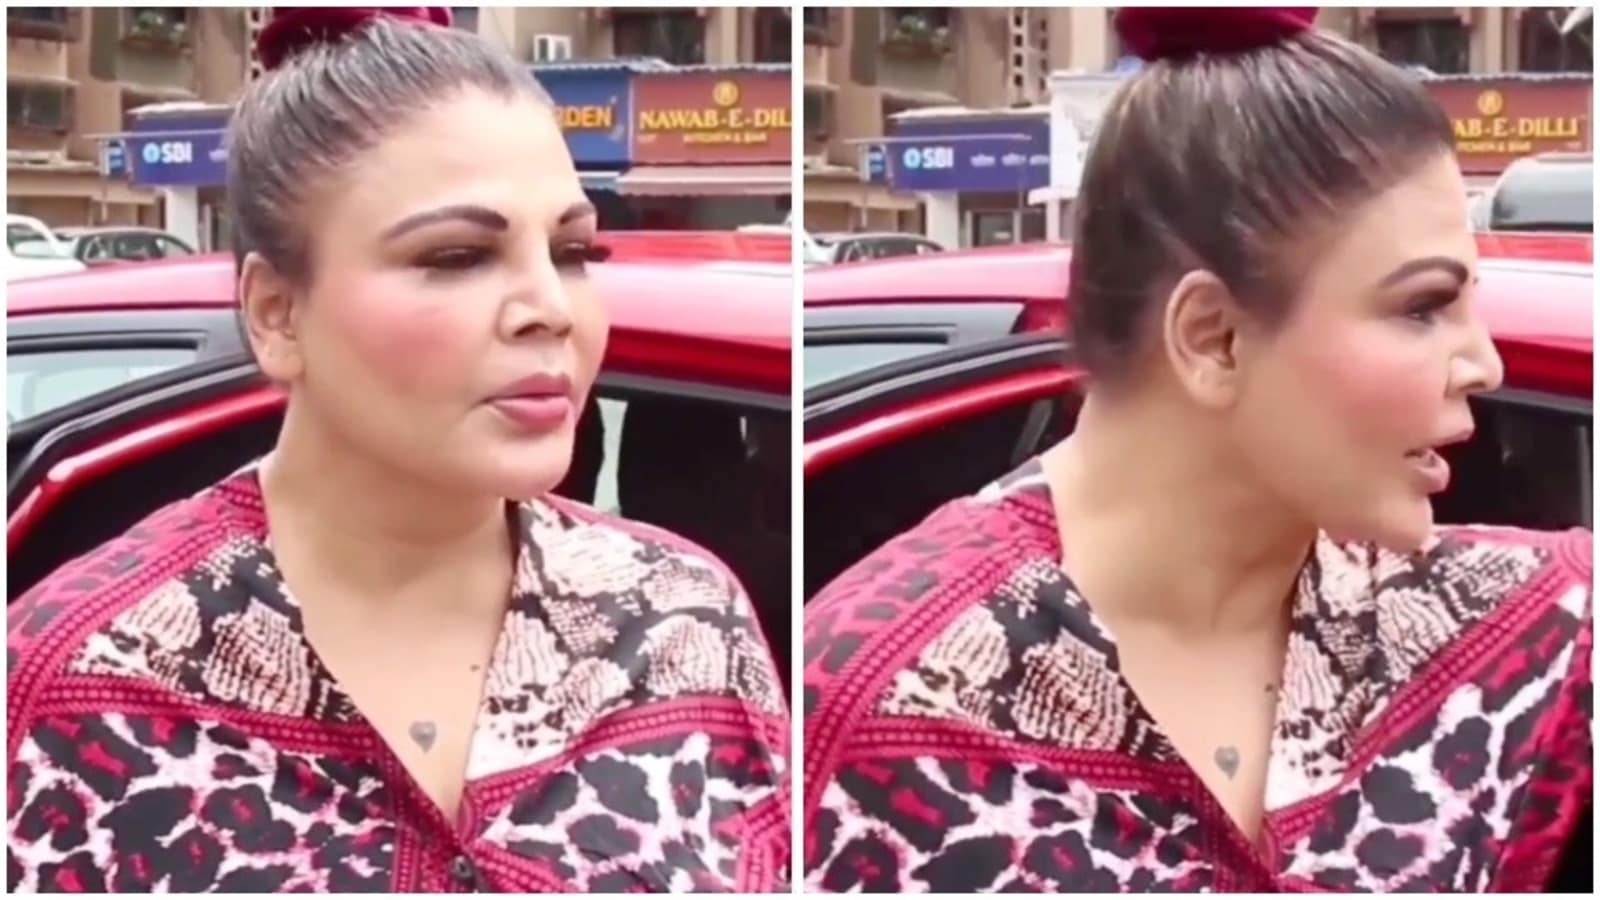 Rakhisaban Sex Videos - Rakhi Sawant tells man to stop staring at her: 'Ladki nahi dekhi uncle?' -  Hindustan Times